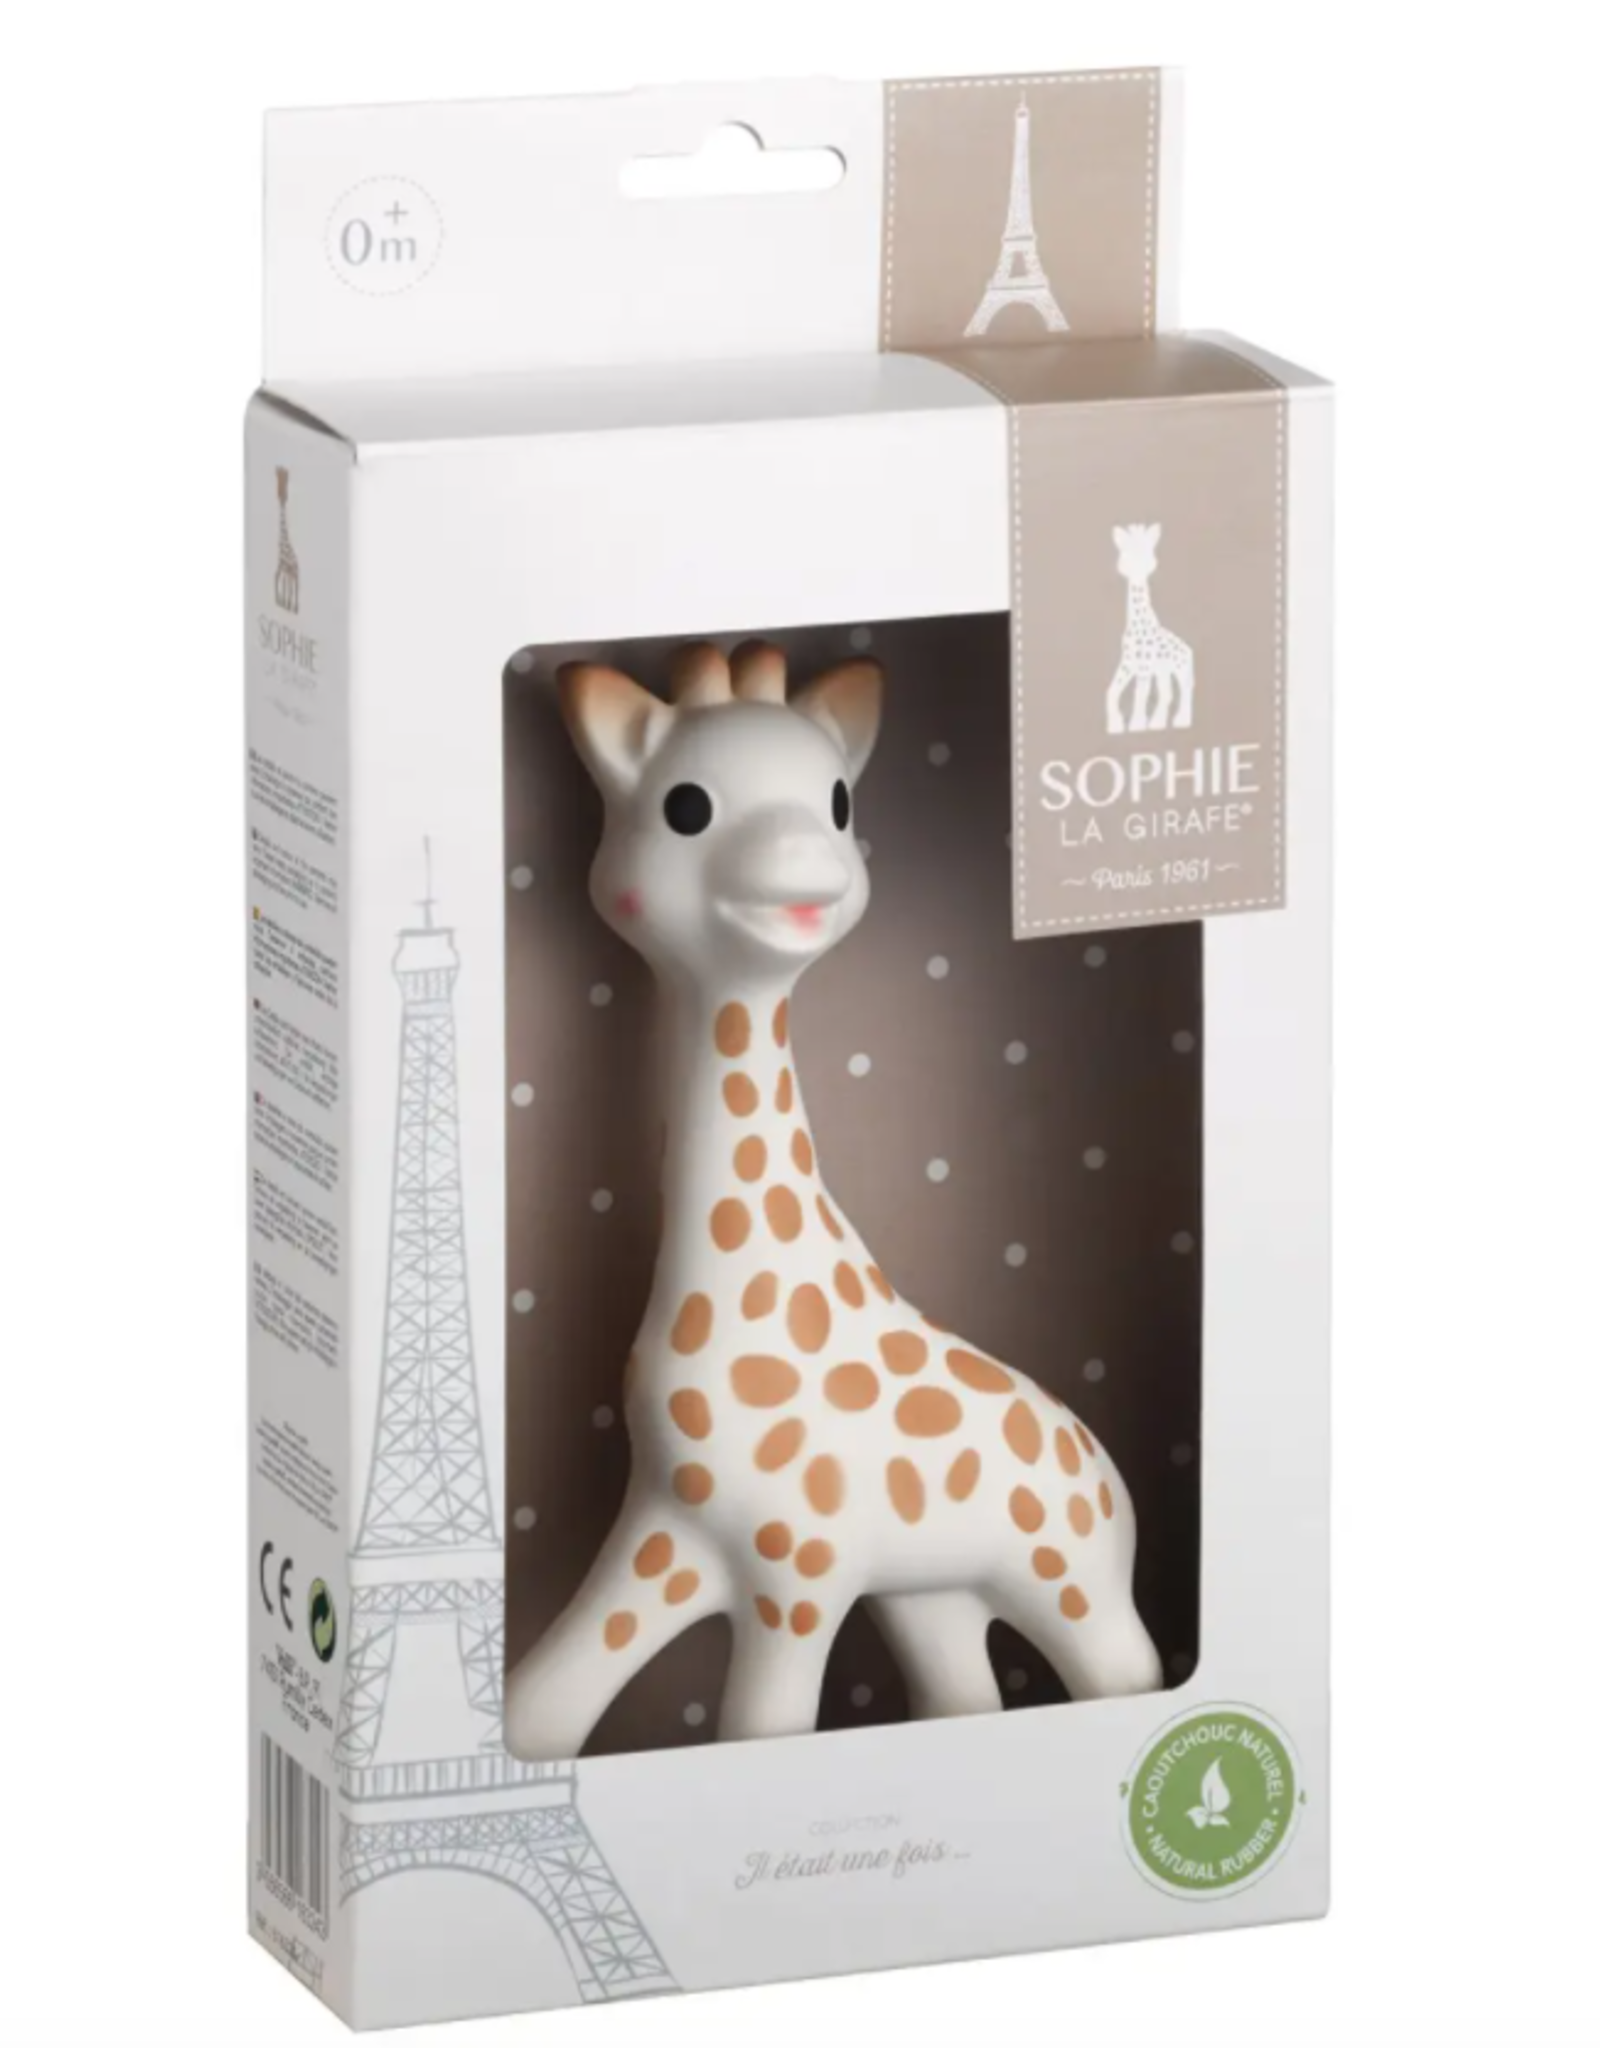 Sophie La Girafe White Box